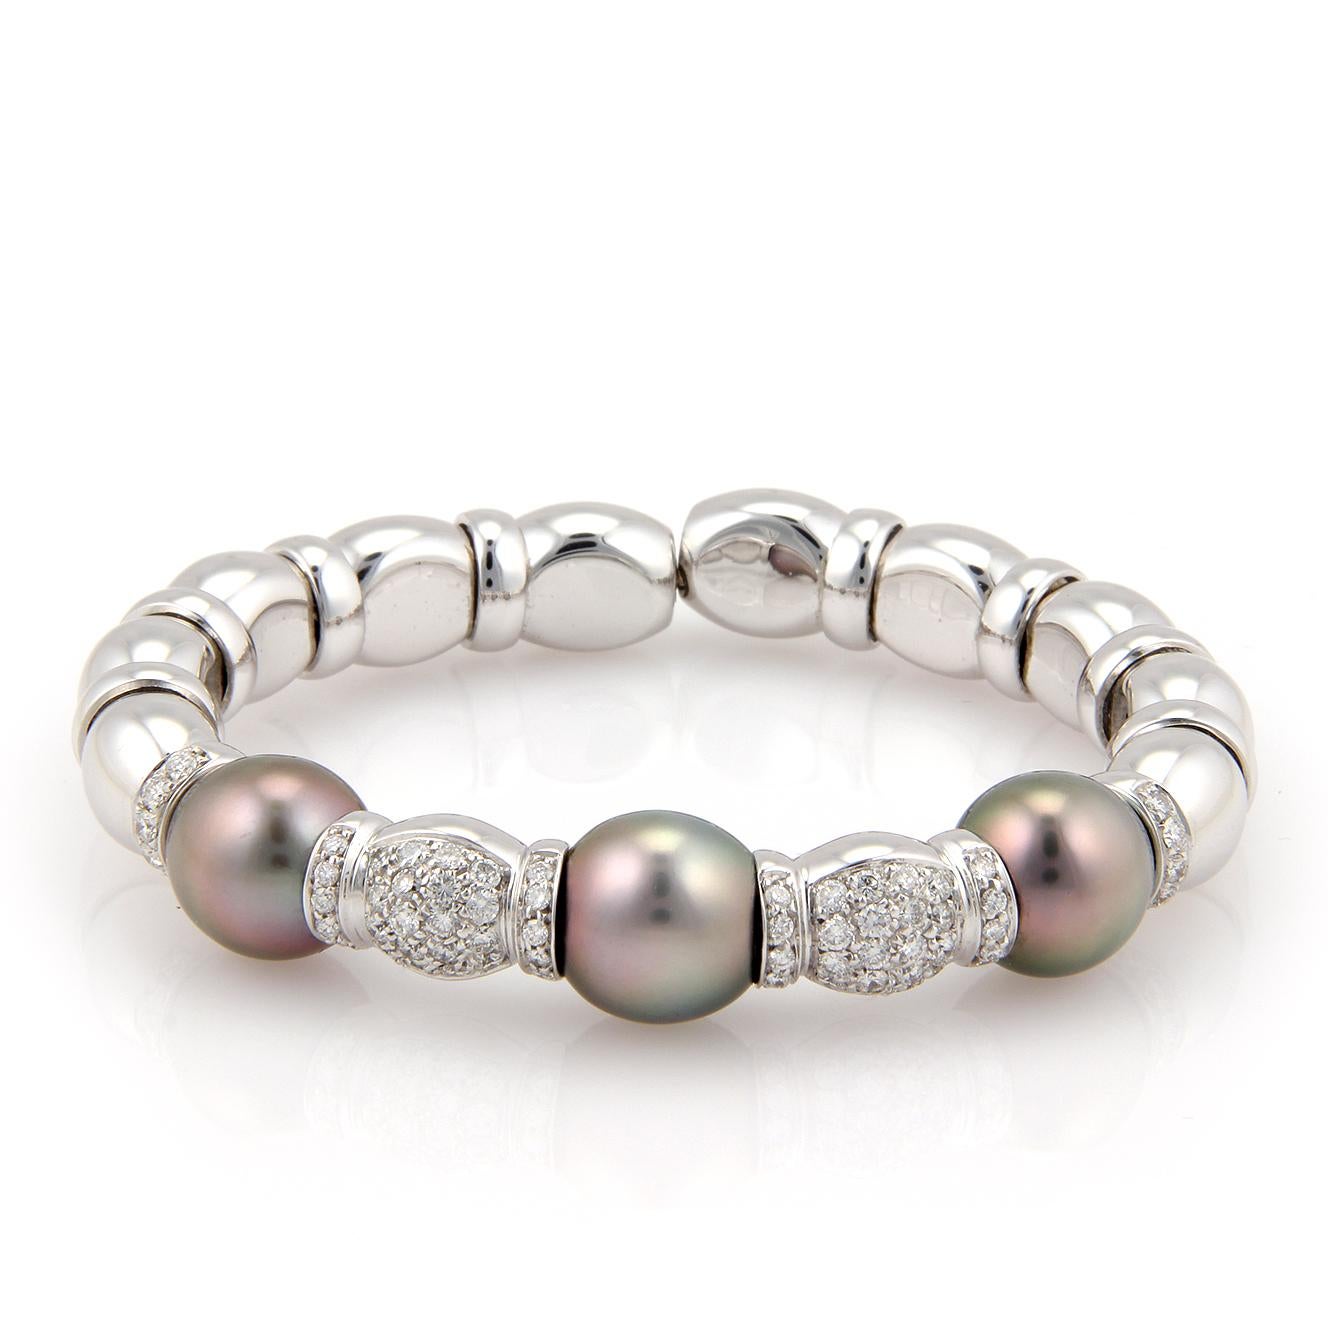 Il s'agit d'un superbe bracelet Estate, en or blanc 18 carats, avec une finition polie. Il s'agit d'un bracelet de style flexible avec de longues perles et des anneaux, l'avant de la bande a deux parties de perles avec des anneaux ornés de diamants